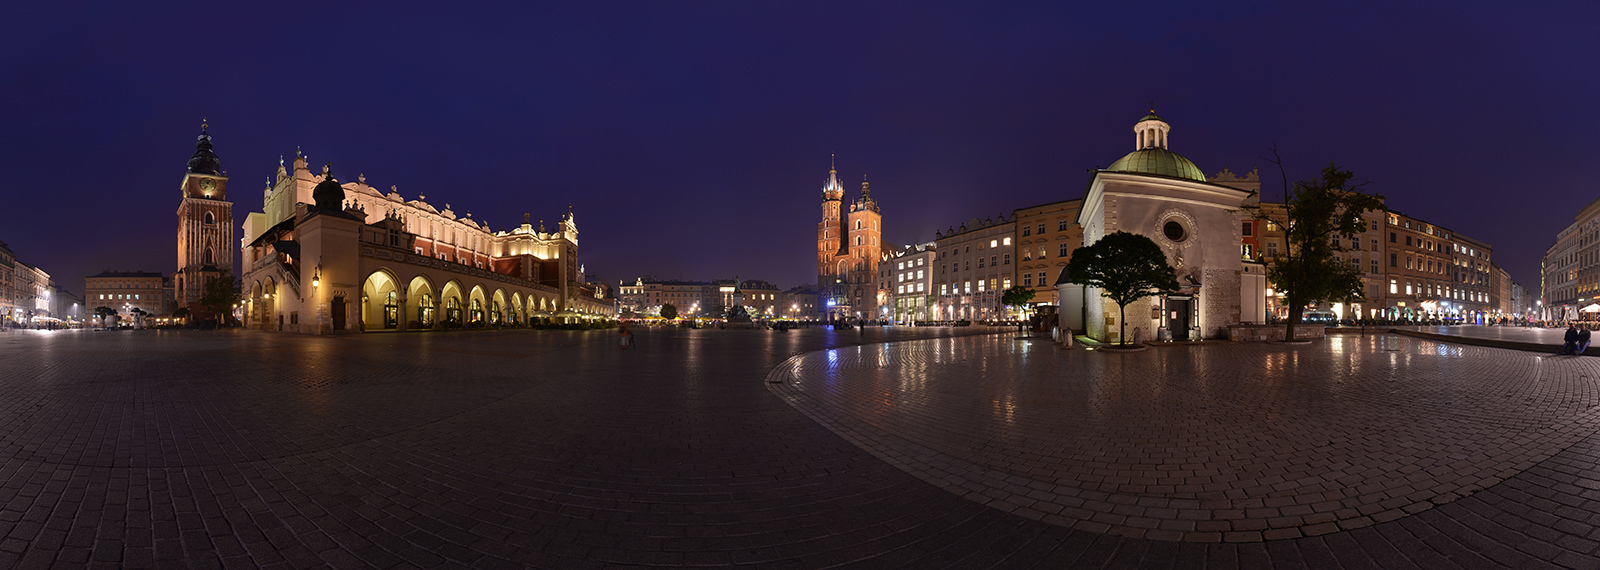 Krakow Old town, Main Square - Virtual tour